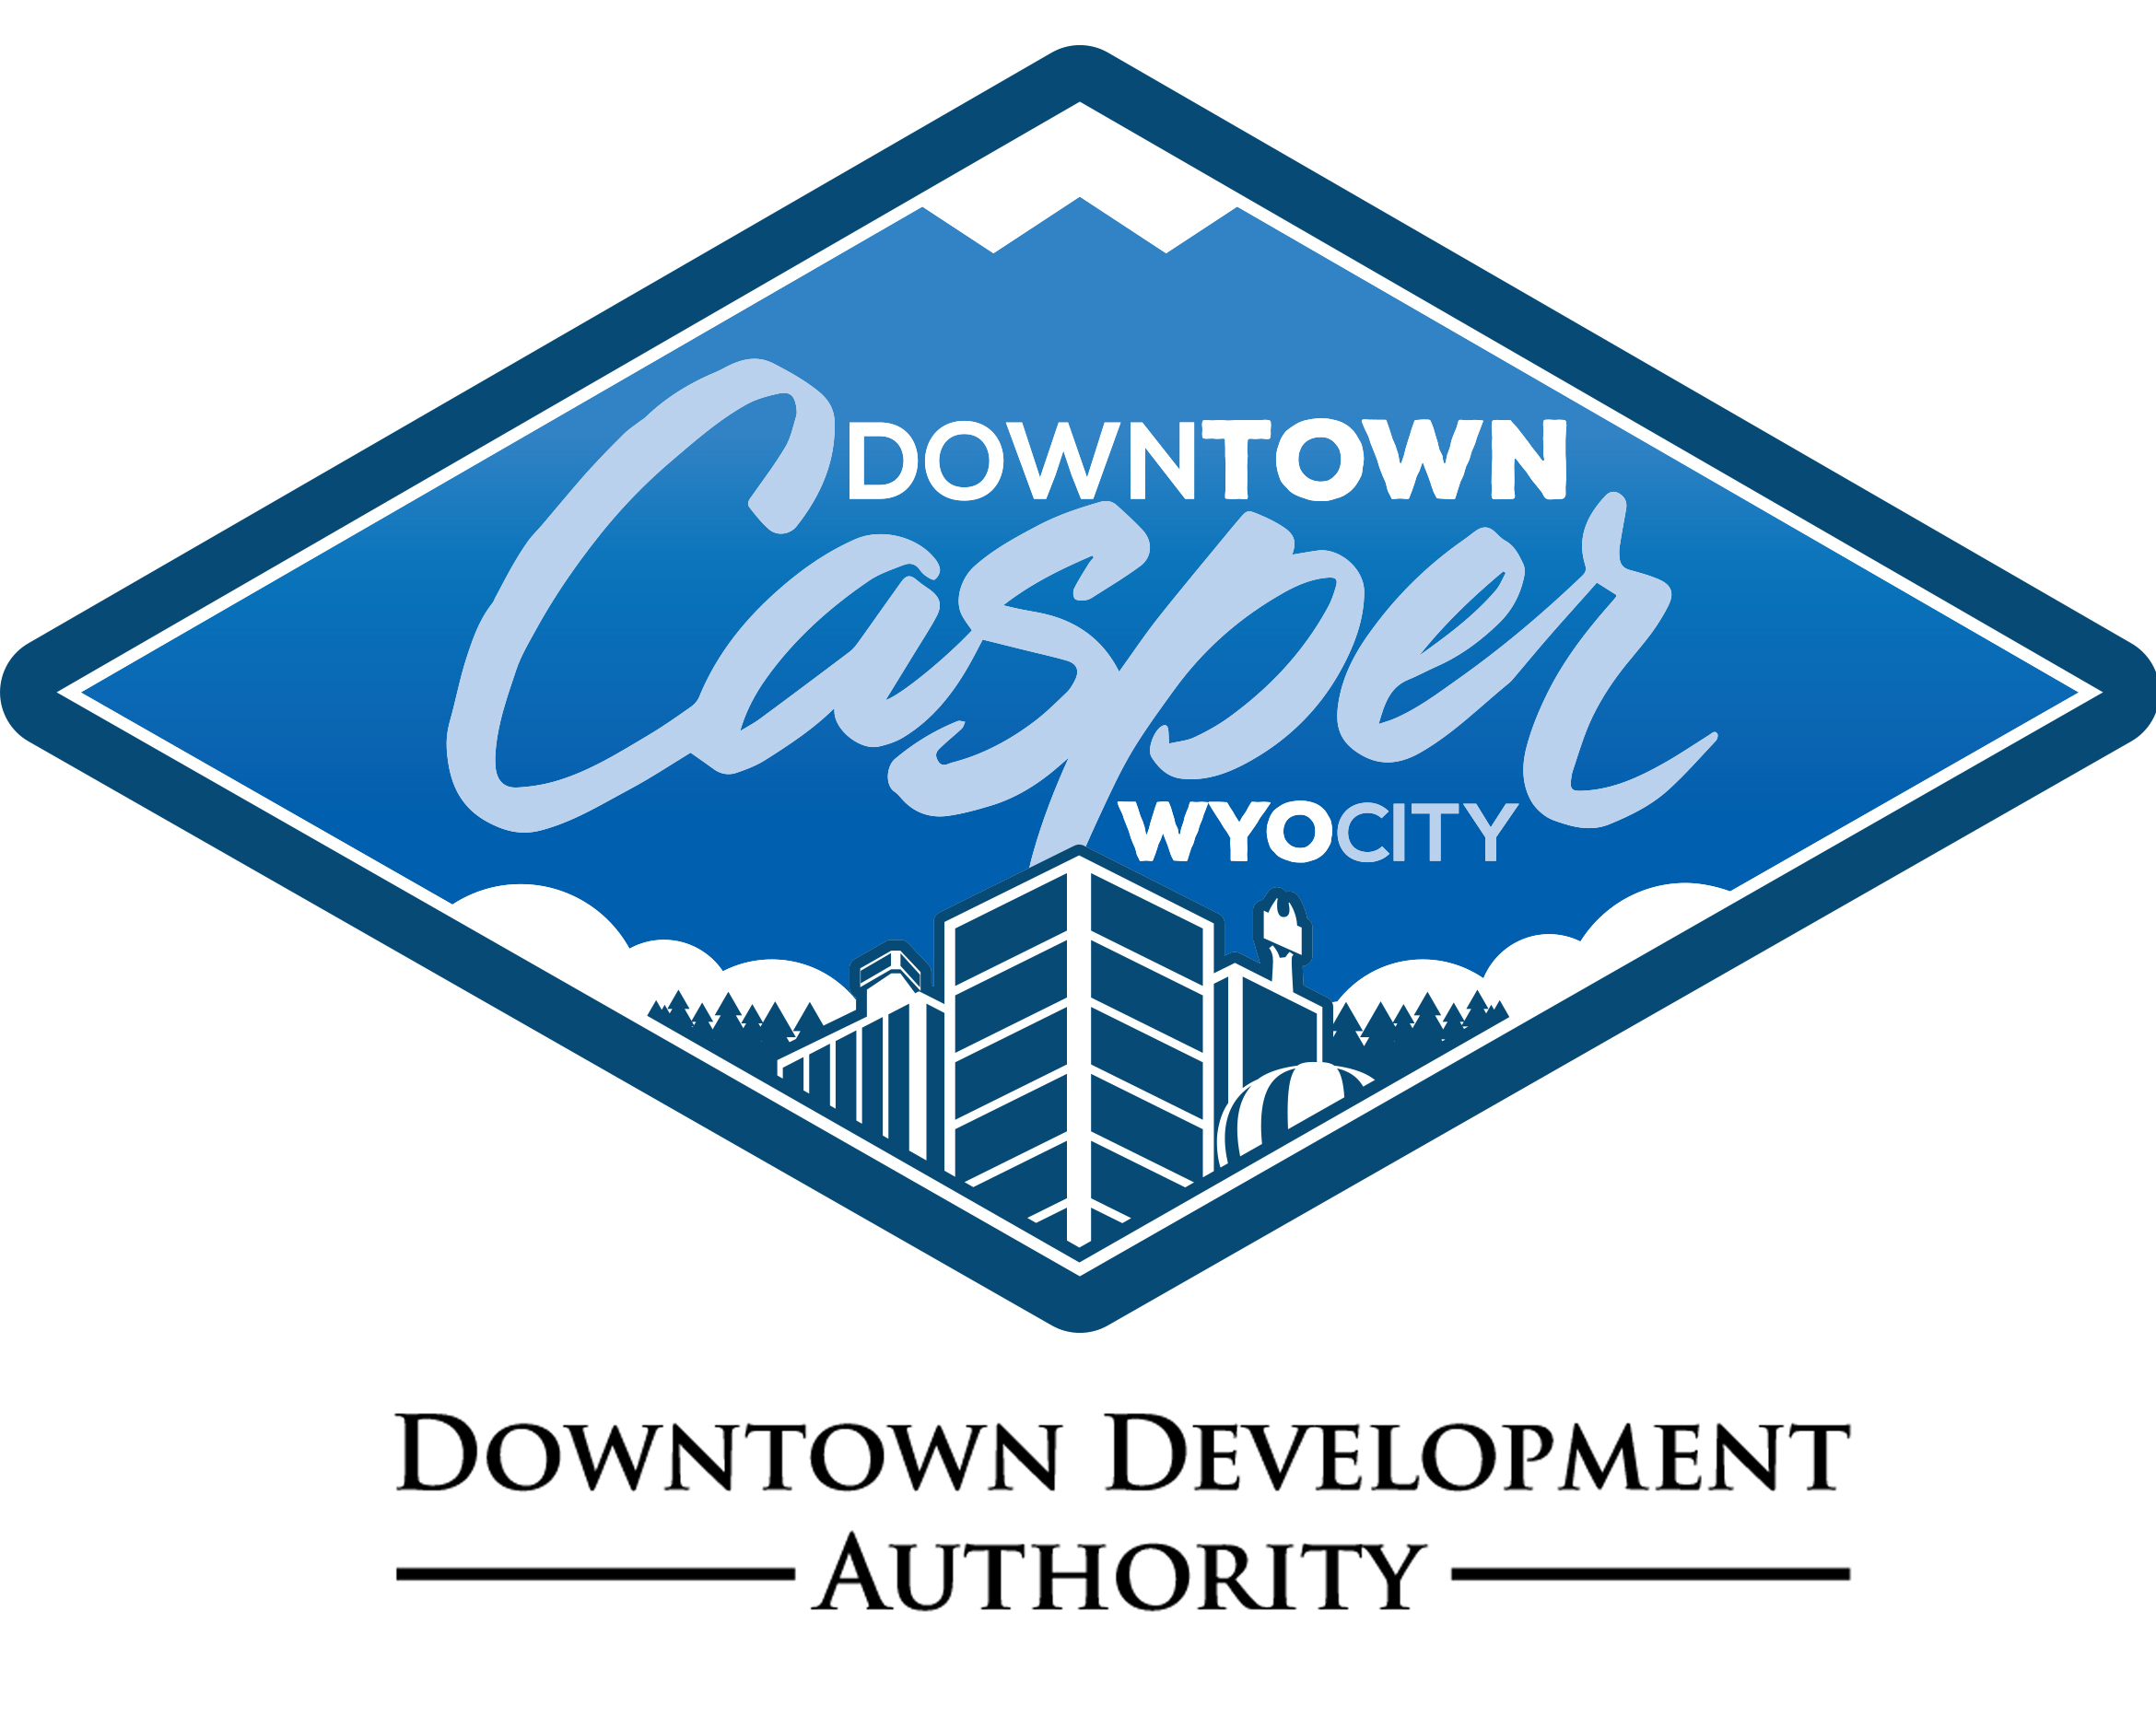 Downtown Development Authority341 W. Yellowstone HWY Casper, WY 82601 307-235-6710www.downtowncasper.com